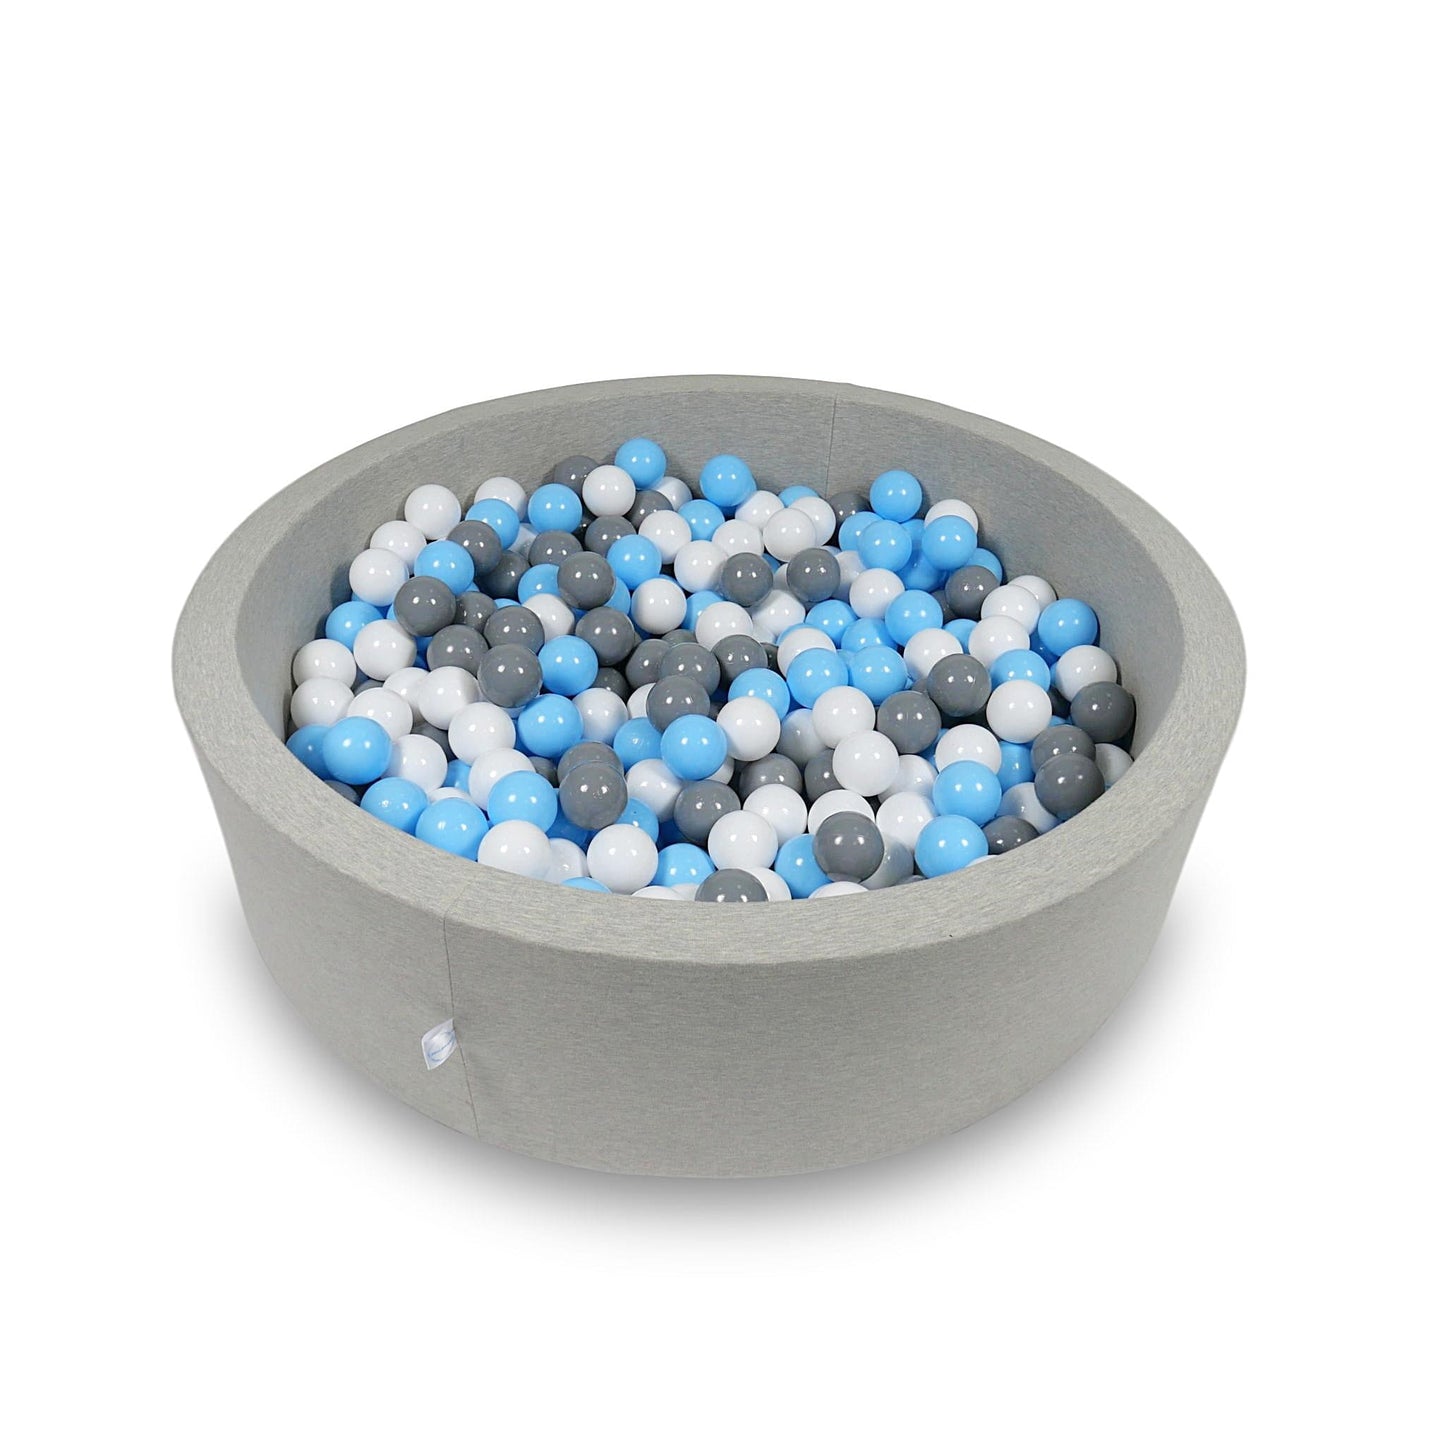 Piscine à Balles 110x30cm gris clair avec balles 400pcs (bleu clair, blanc, gris)